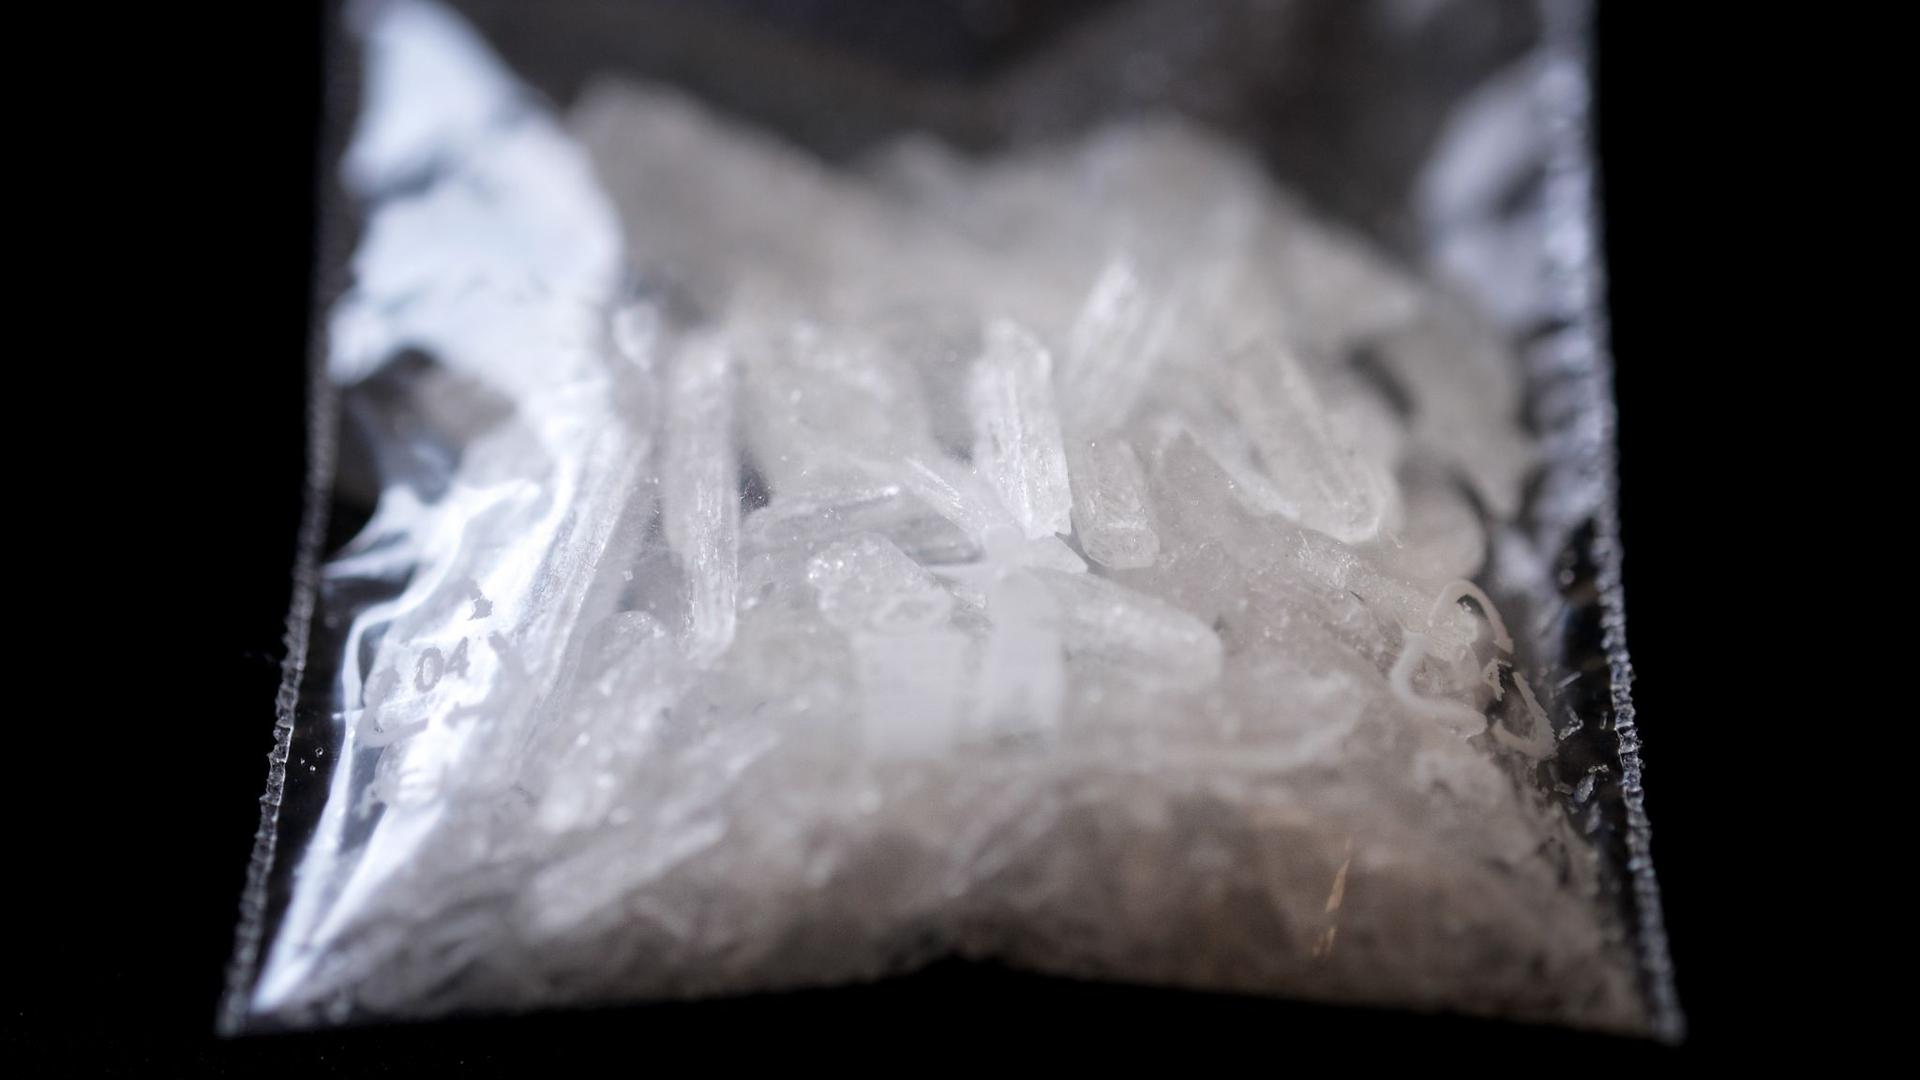 Das Foto zeigt einen Fund der synthetischen Droge Crystal.